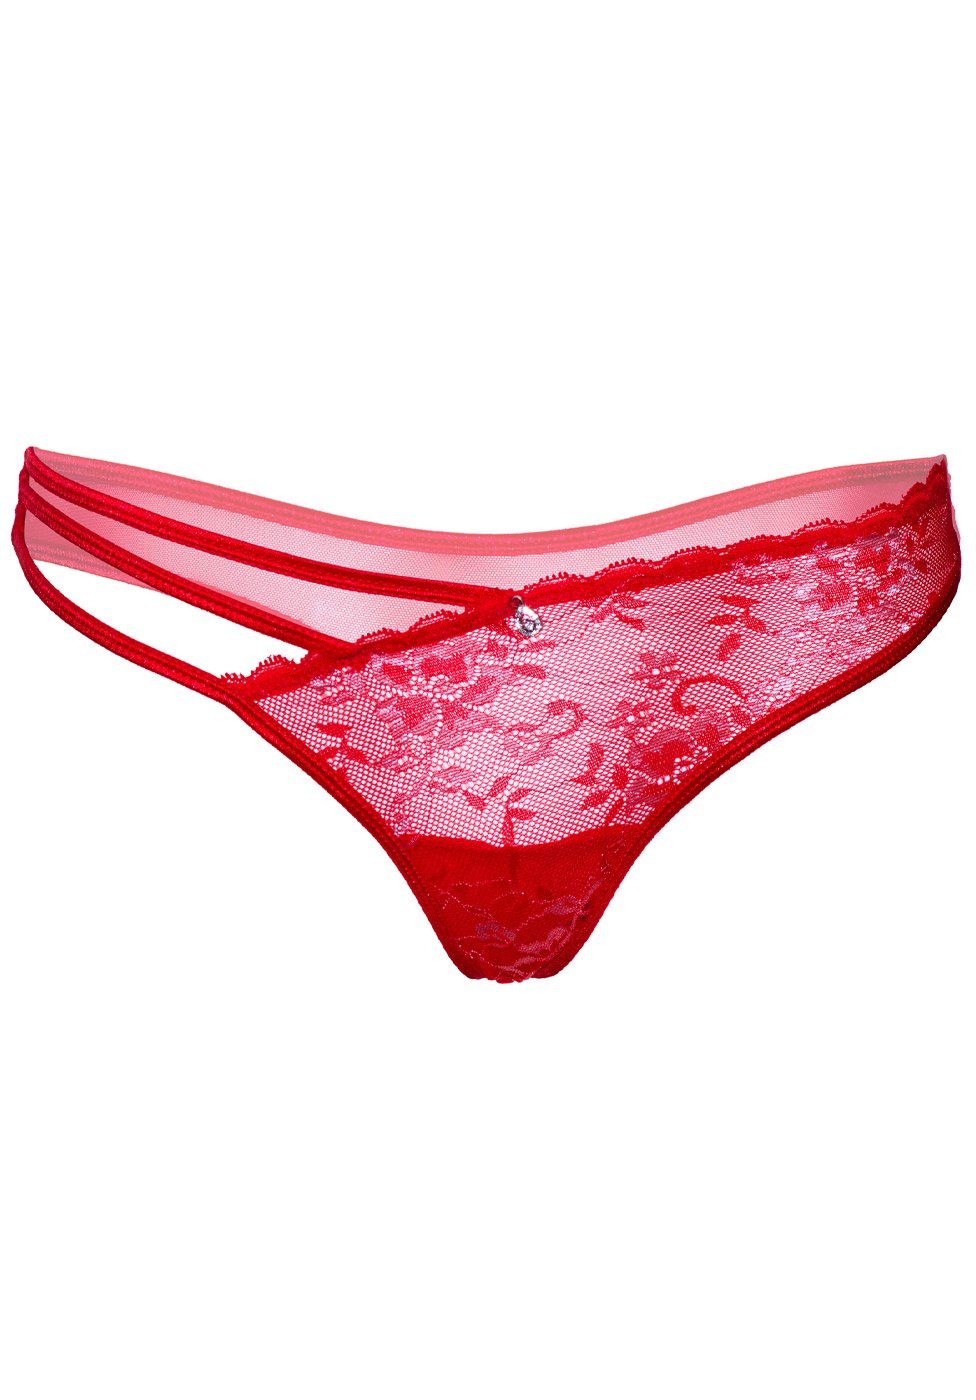 Stringtanga Transparenter rot mit floraler Daring Spitze String - Intimates